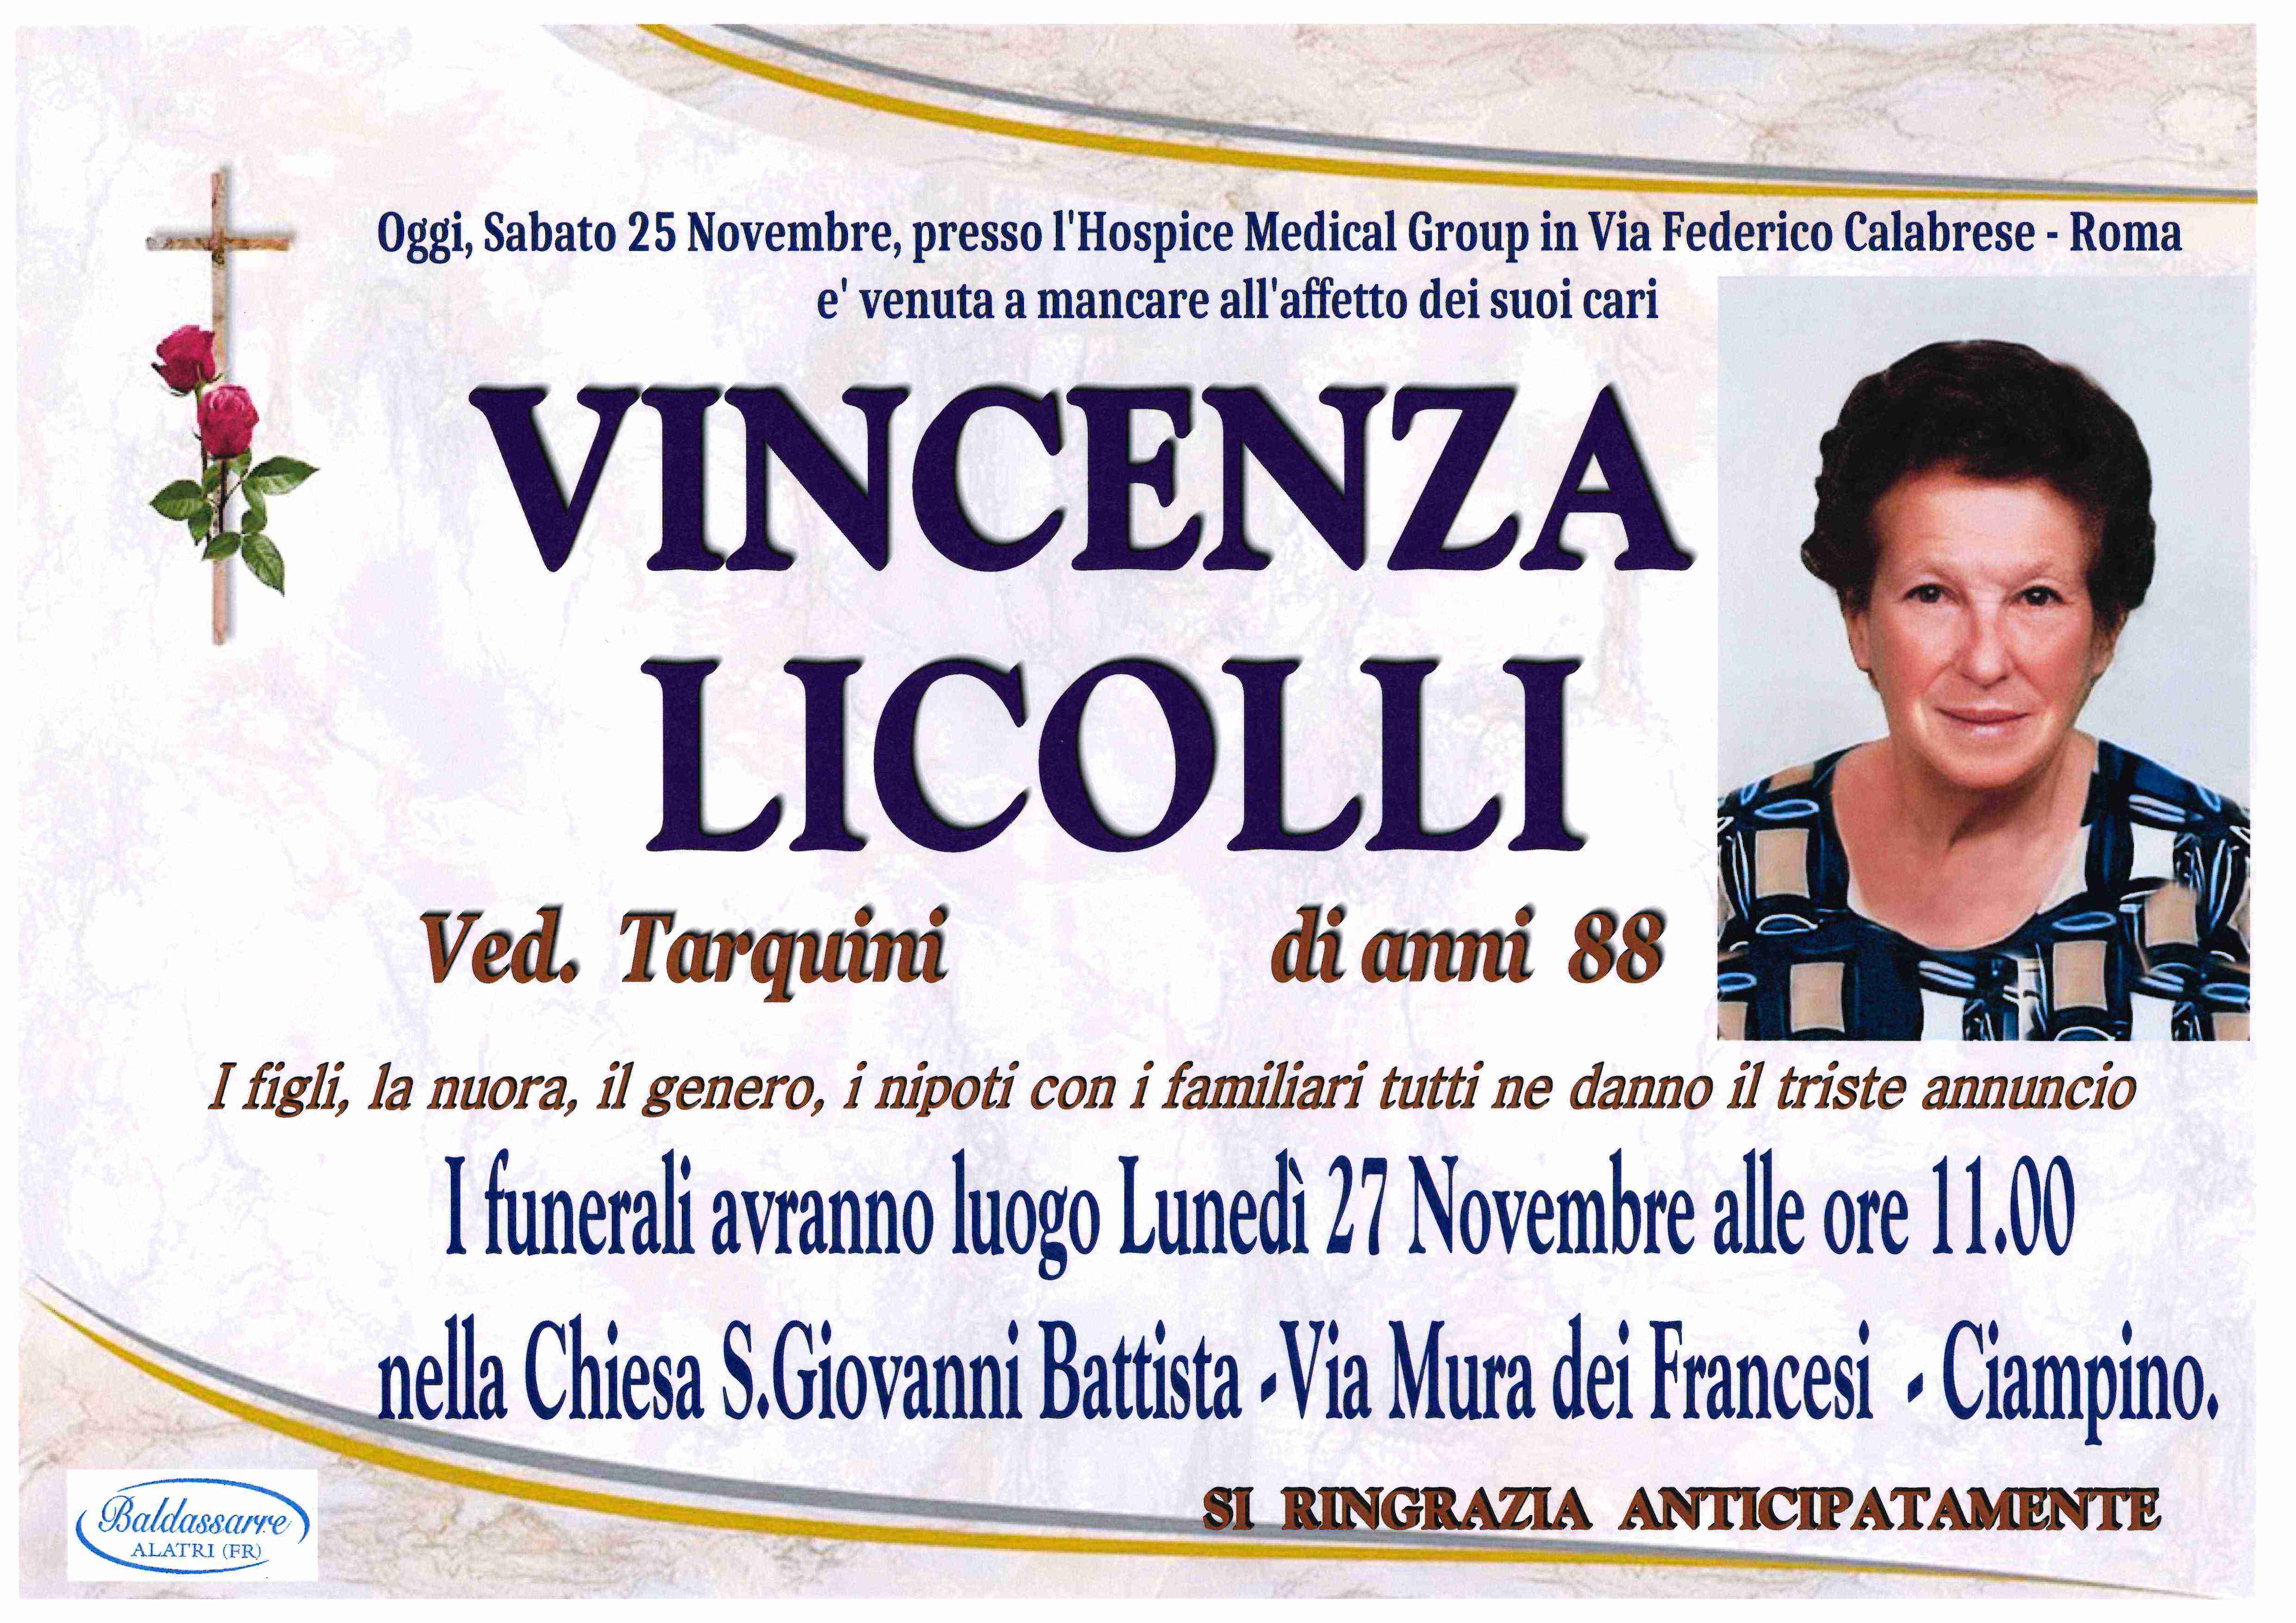 Vincenza Licolli